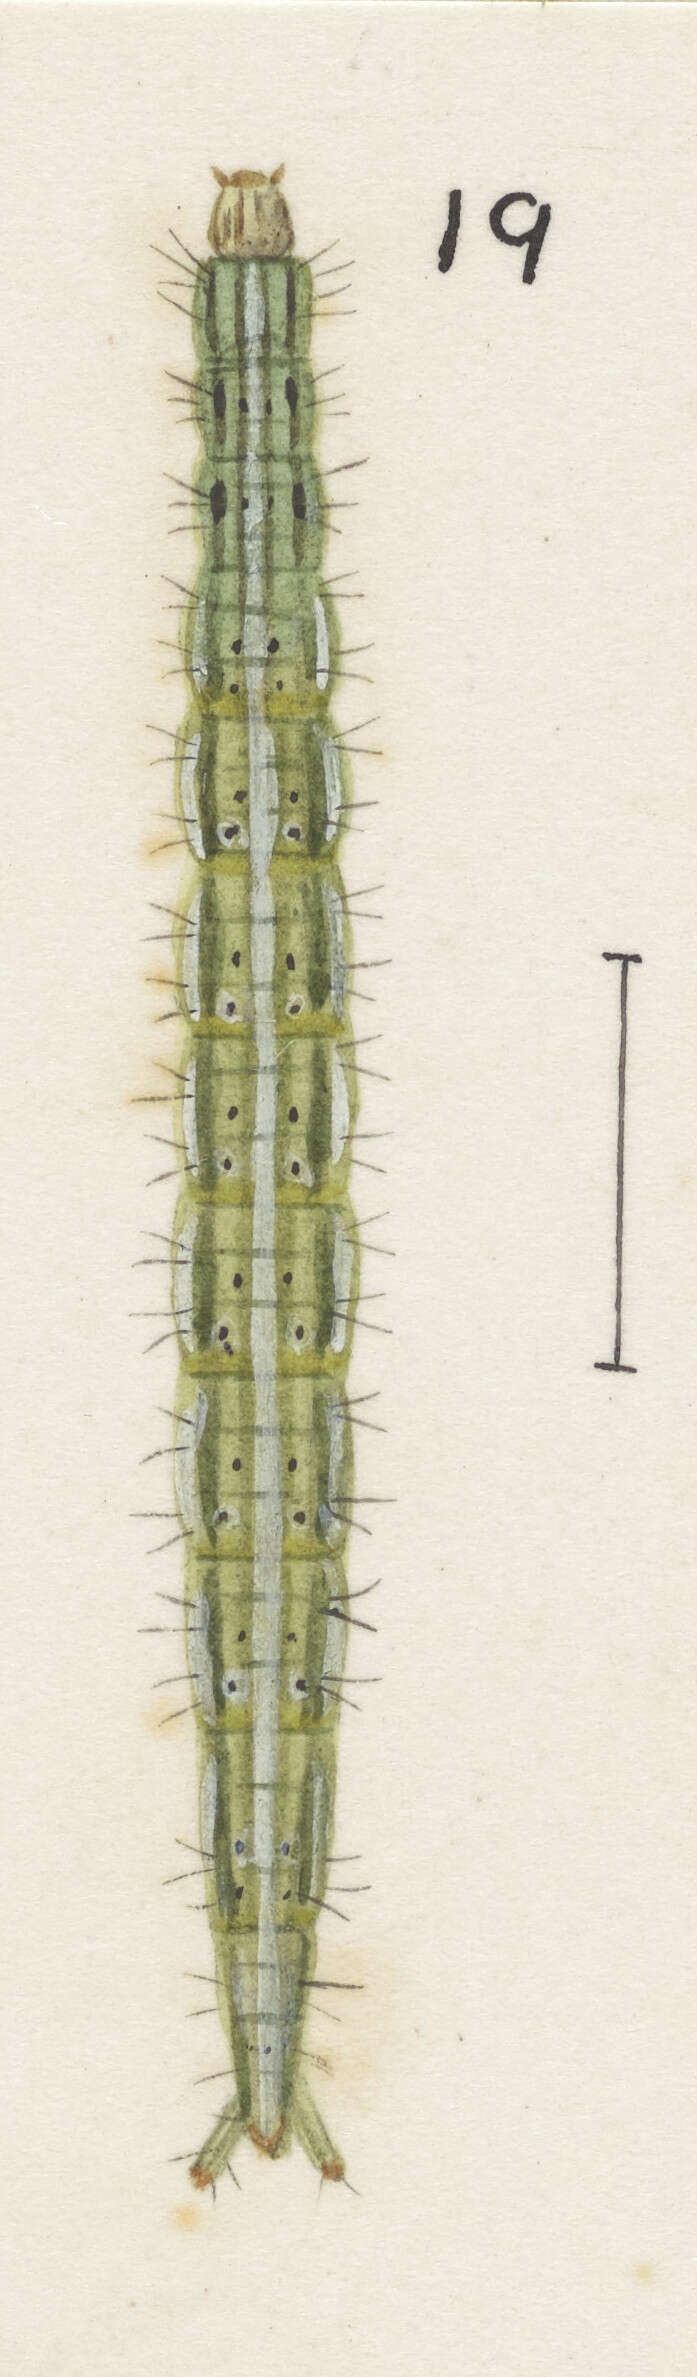 Image of Protosynaema steropucha Meyrick 1886